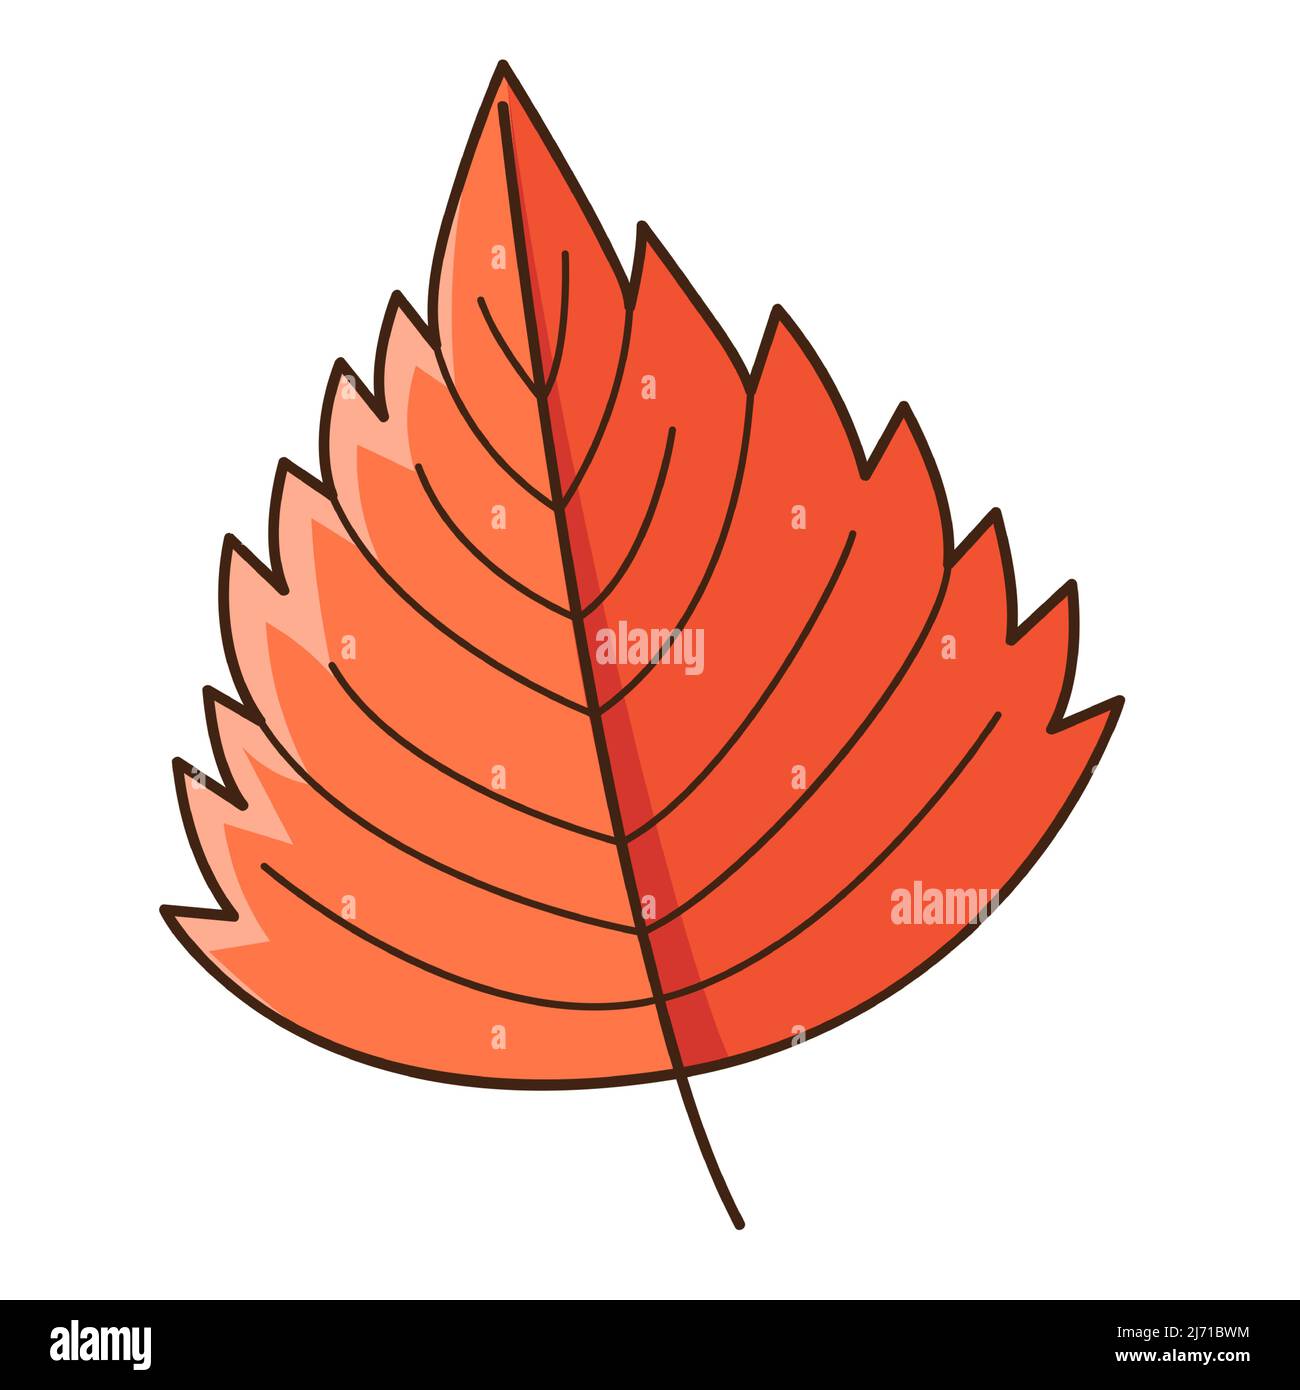 Foglia d'autunno rossa. Botanica, elemento di disegno vegetale con contorno. Doodle, disegnato a mano. Design piatto. Illustrazione vettoriale a colori. Isolato su un backgro bianco Illustrazione Vettoriale